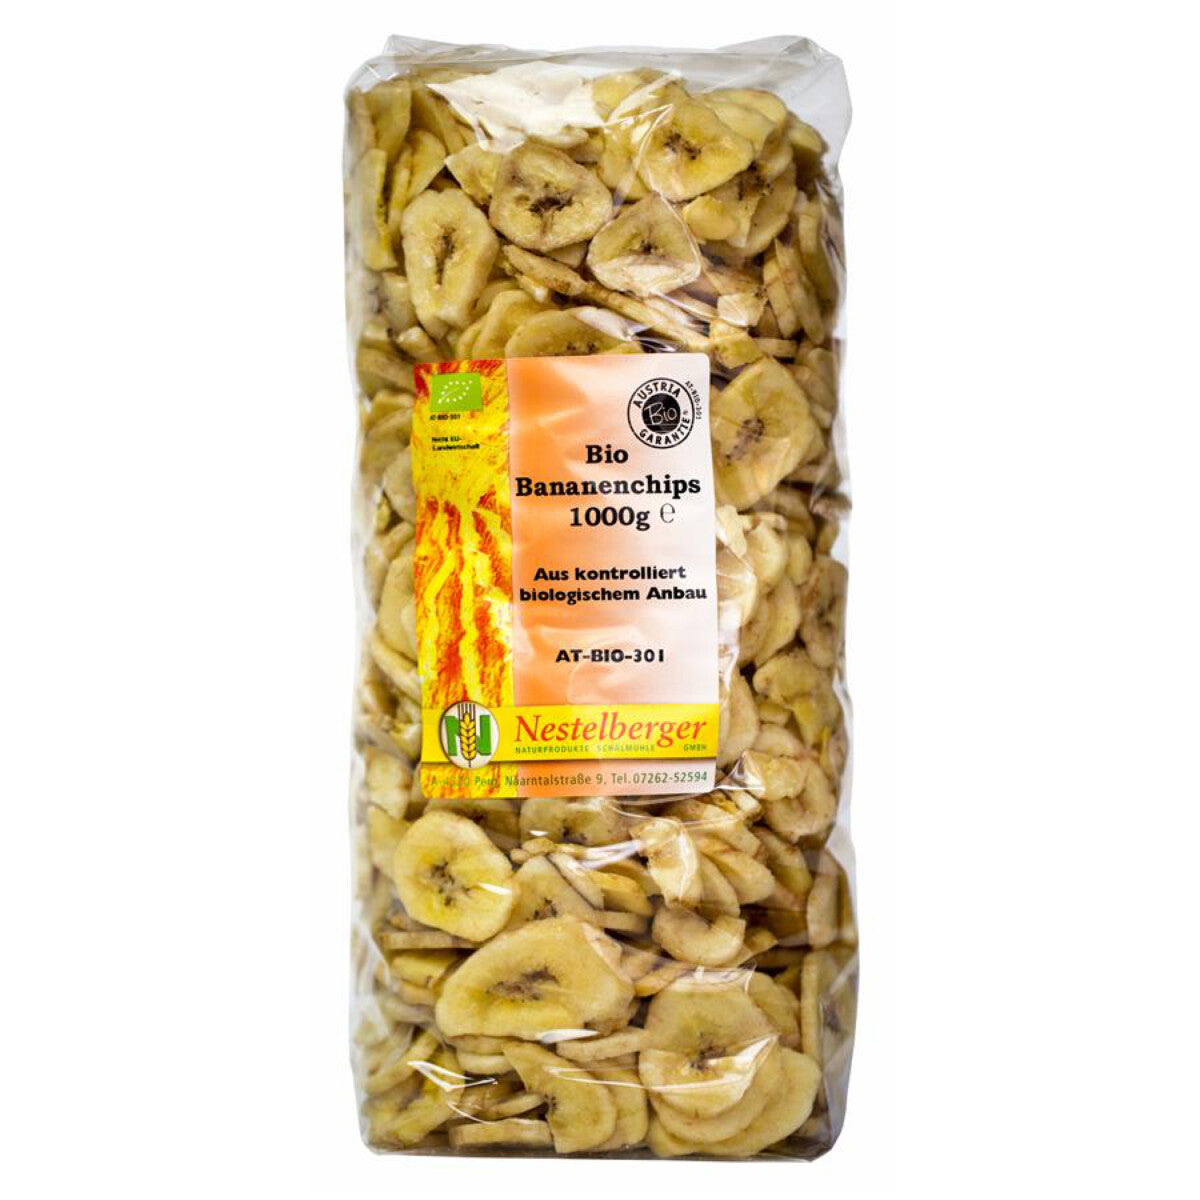 NESTELBERGER Bananenchips getrocknet - 1 kg